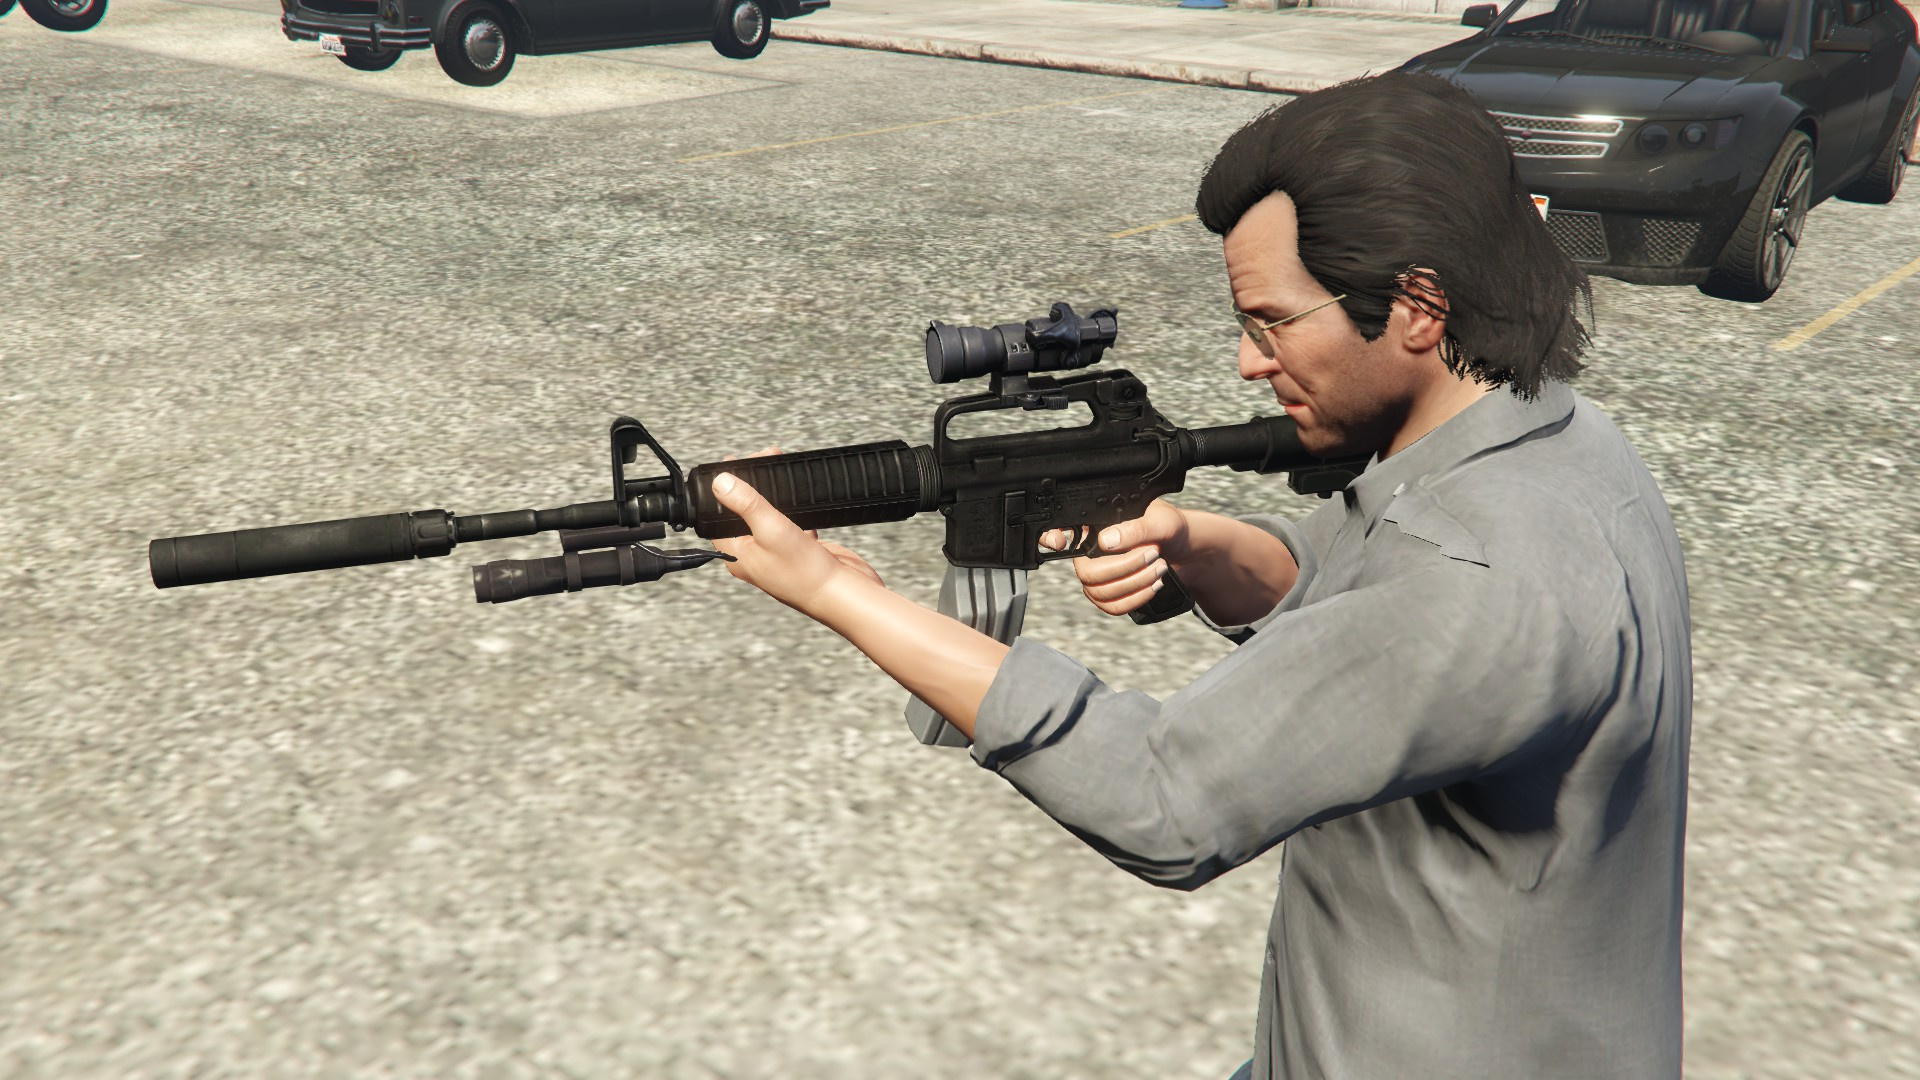 M16 A2 Carbine Mod 727 – Play Gta V PS4 - Grand Theft Auto V Forum (GTA 5)  - Neoseeker Forums